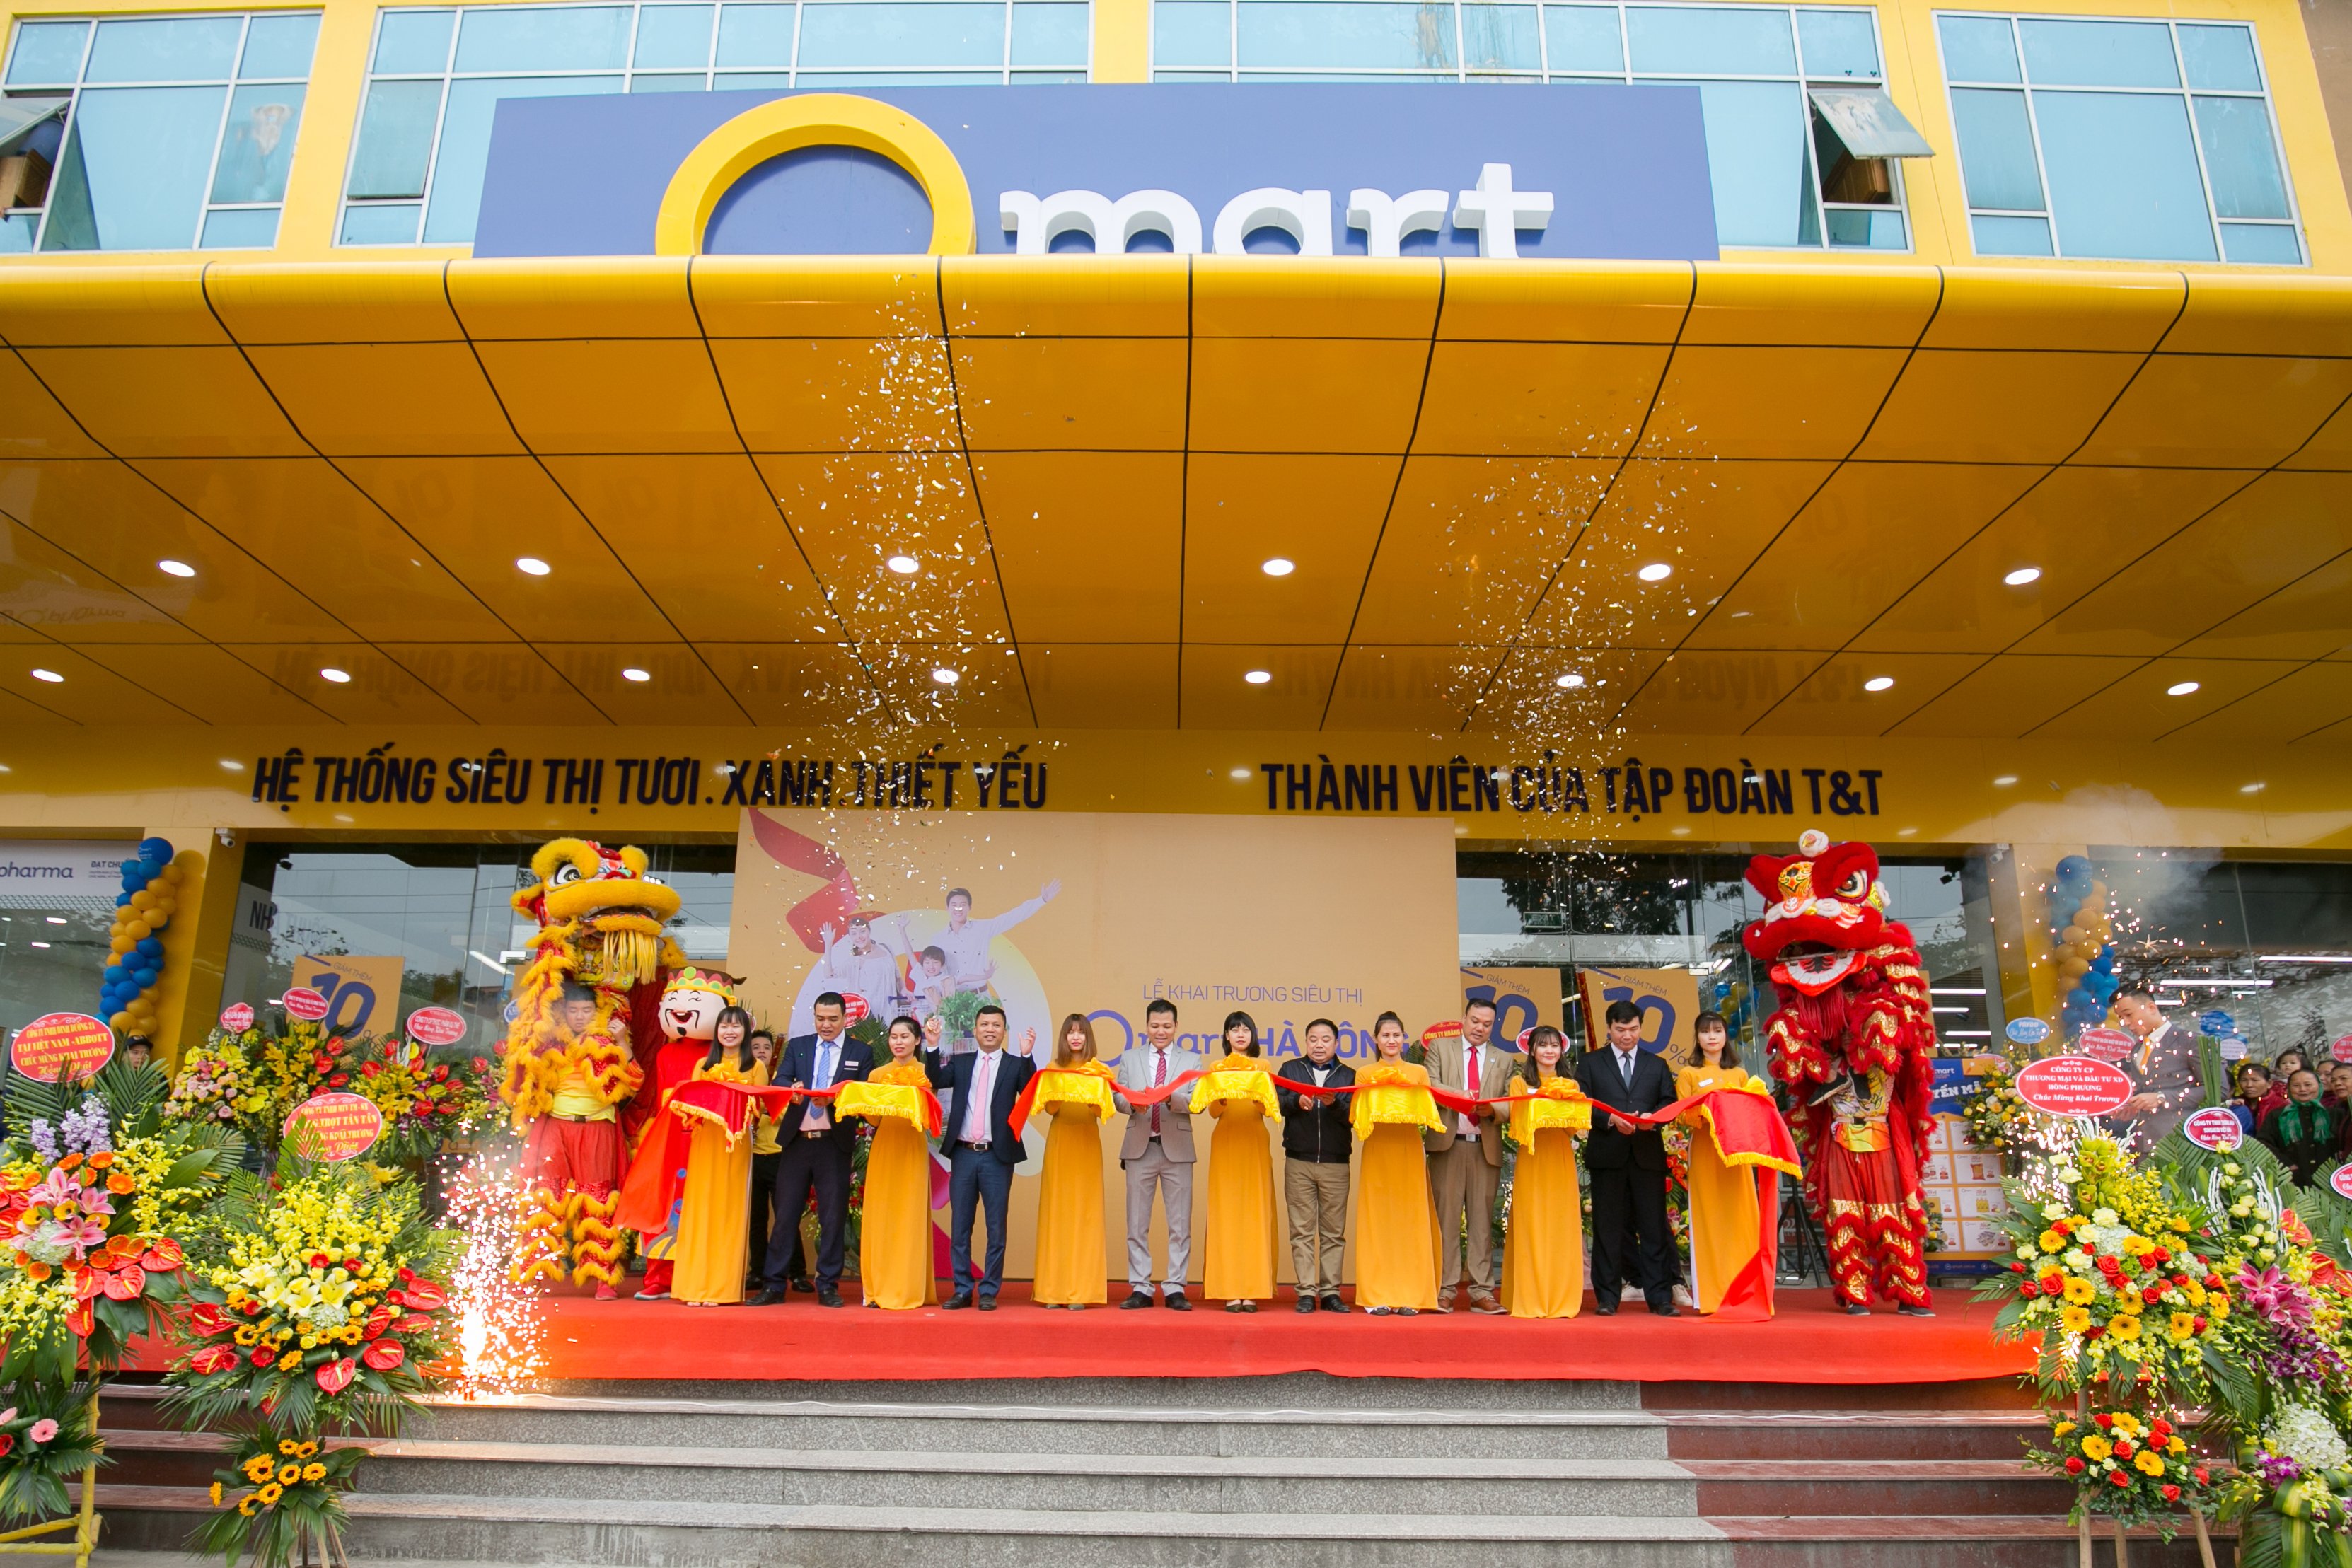 Qmart khai trương siêu thị 3000m2 tại Hà Đông